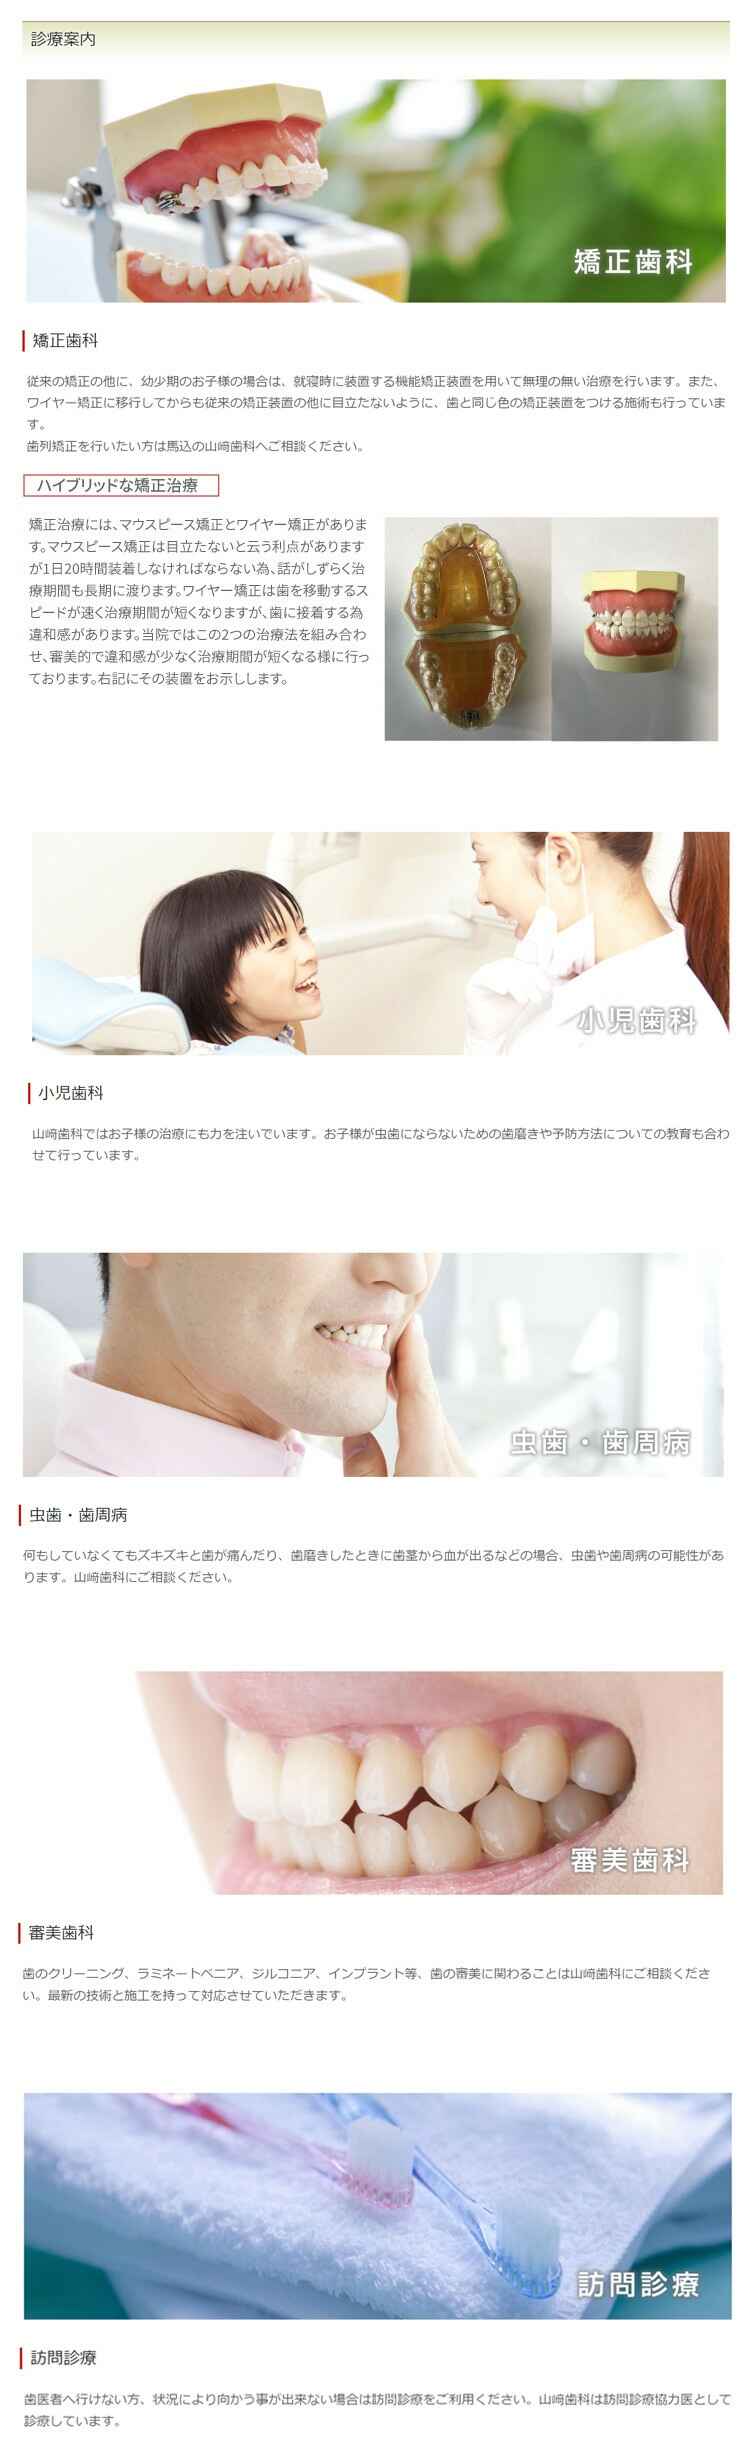 山﨑歯科医院のお知らせ内容